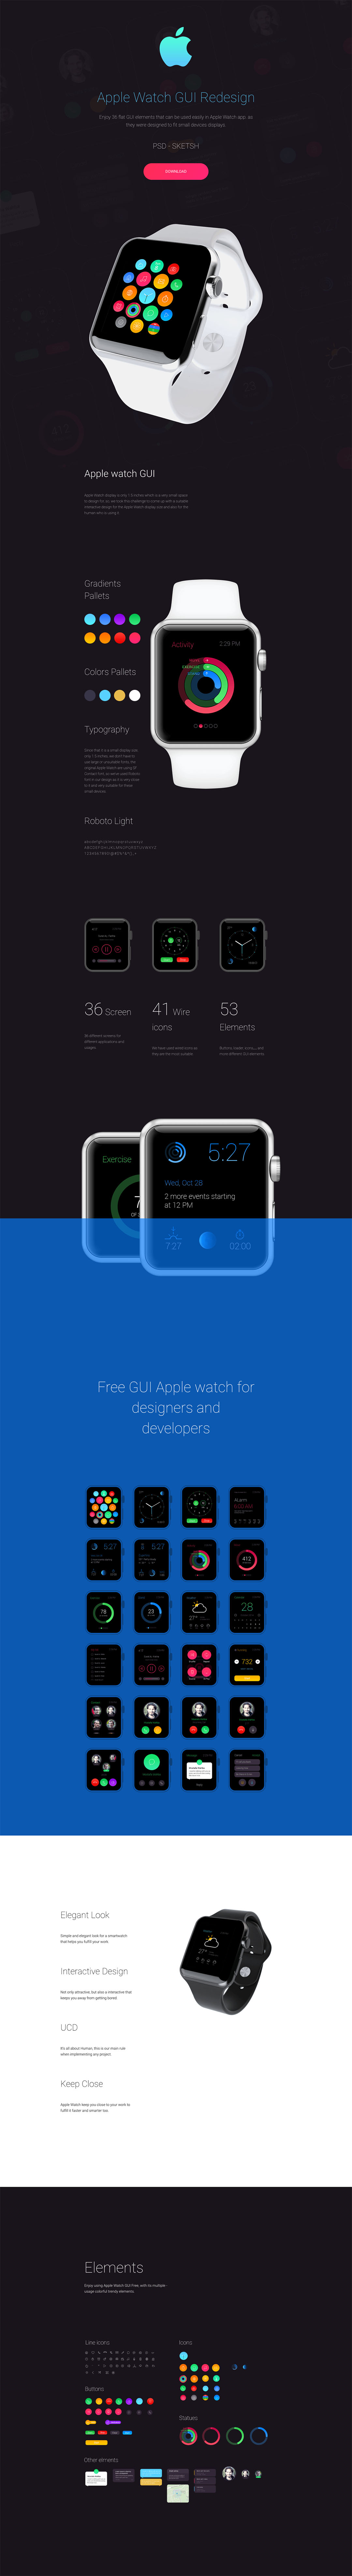 苹果手表穿戴设备 UI 套件 Apple Watch GUI Redesign（界面+图标+元素）插图